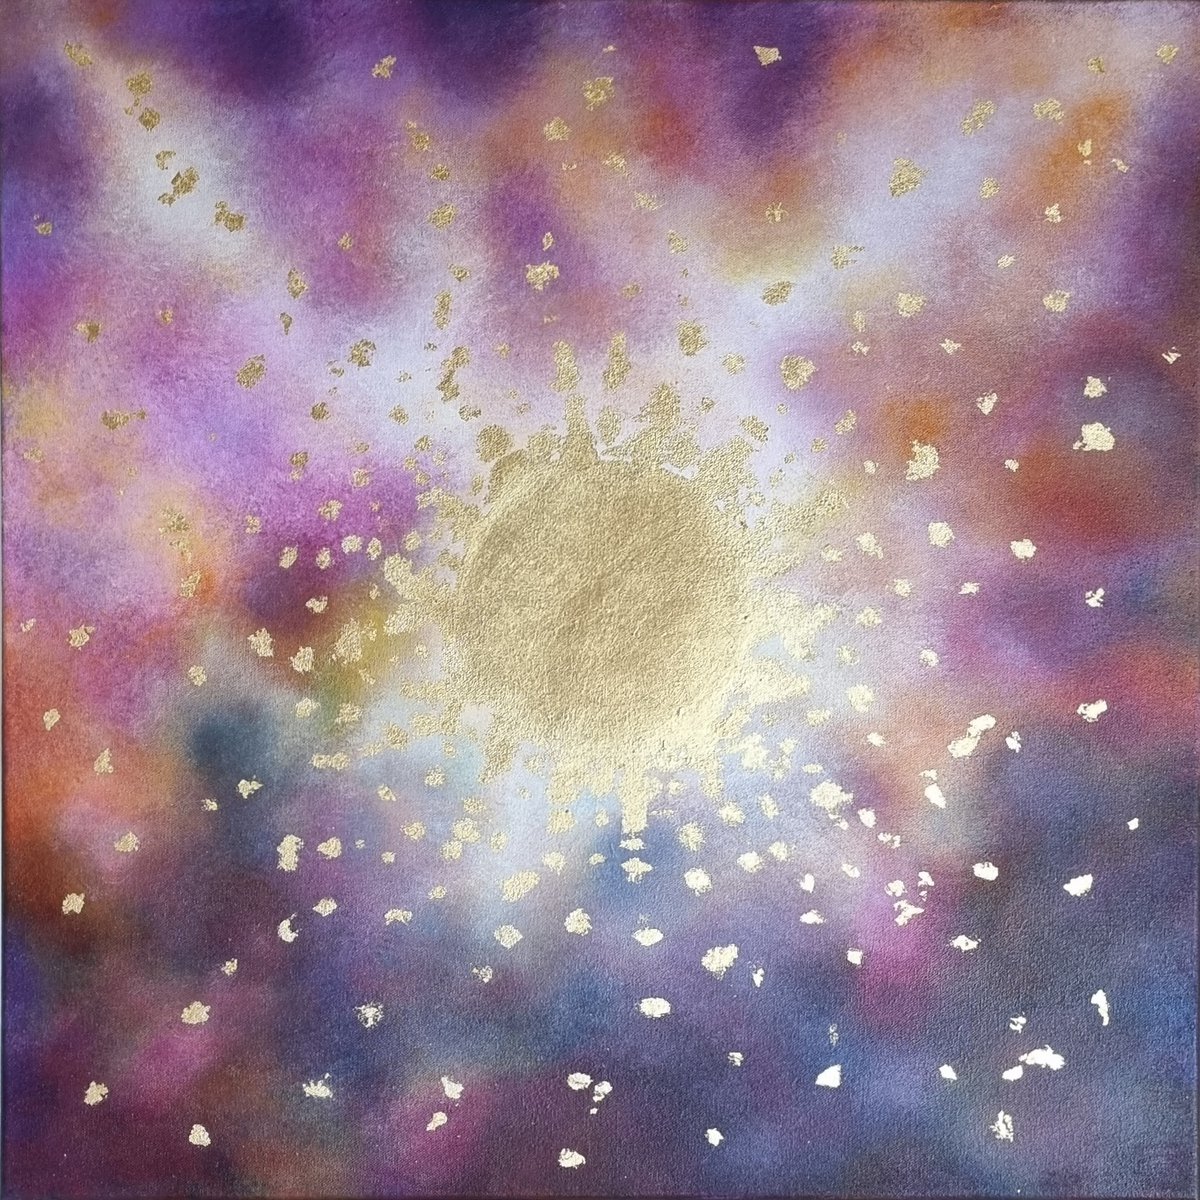 Starlight Rising by Isabella Dinstl